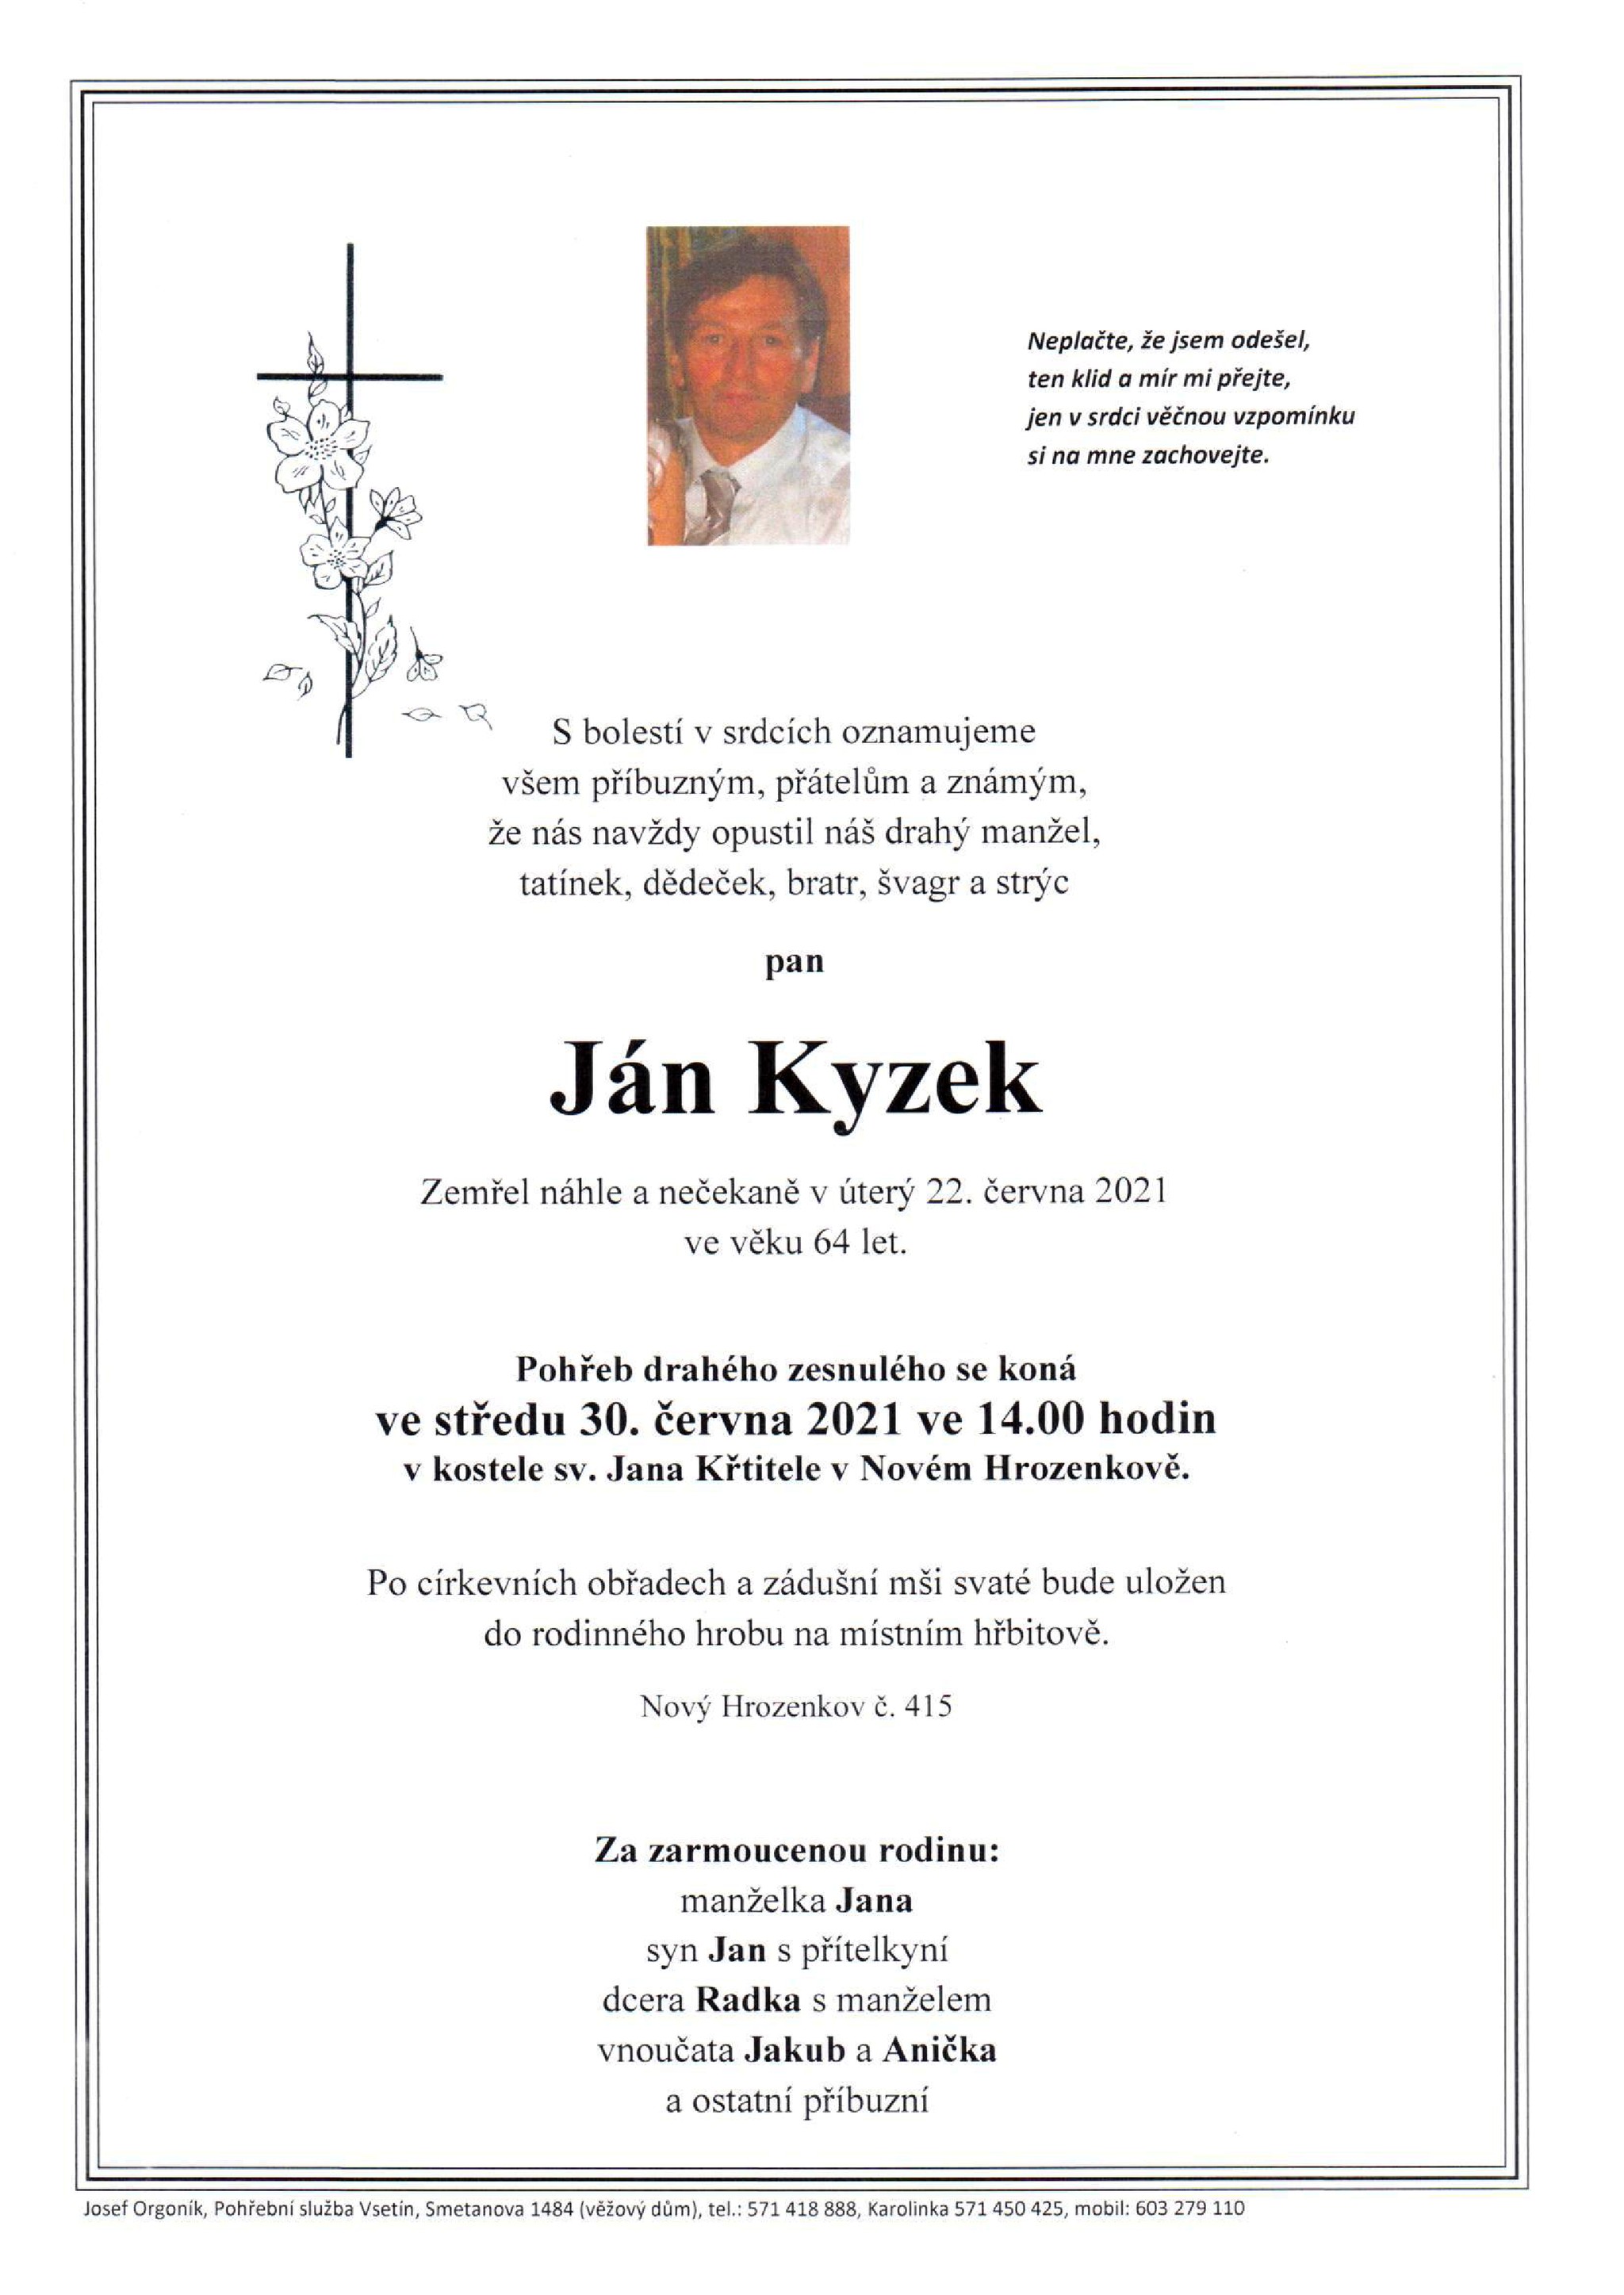 Ján Kyzek